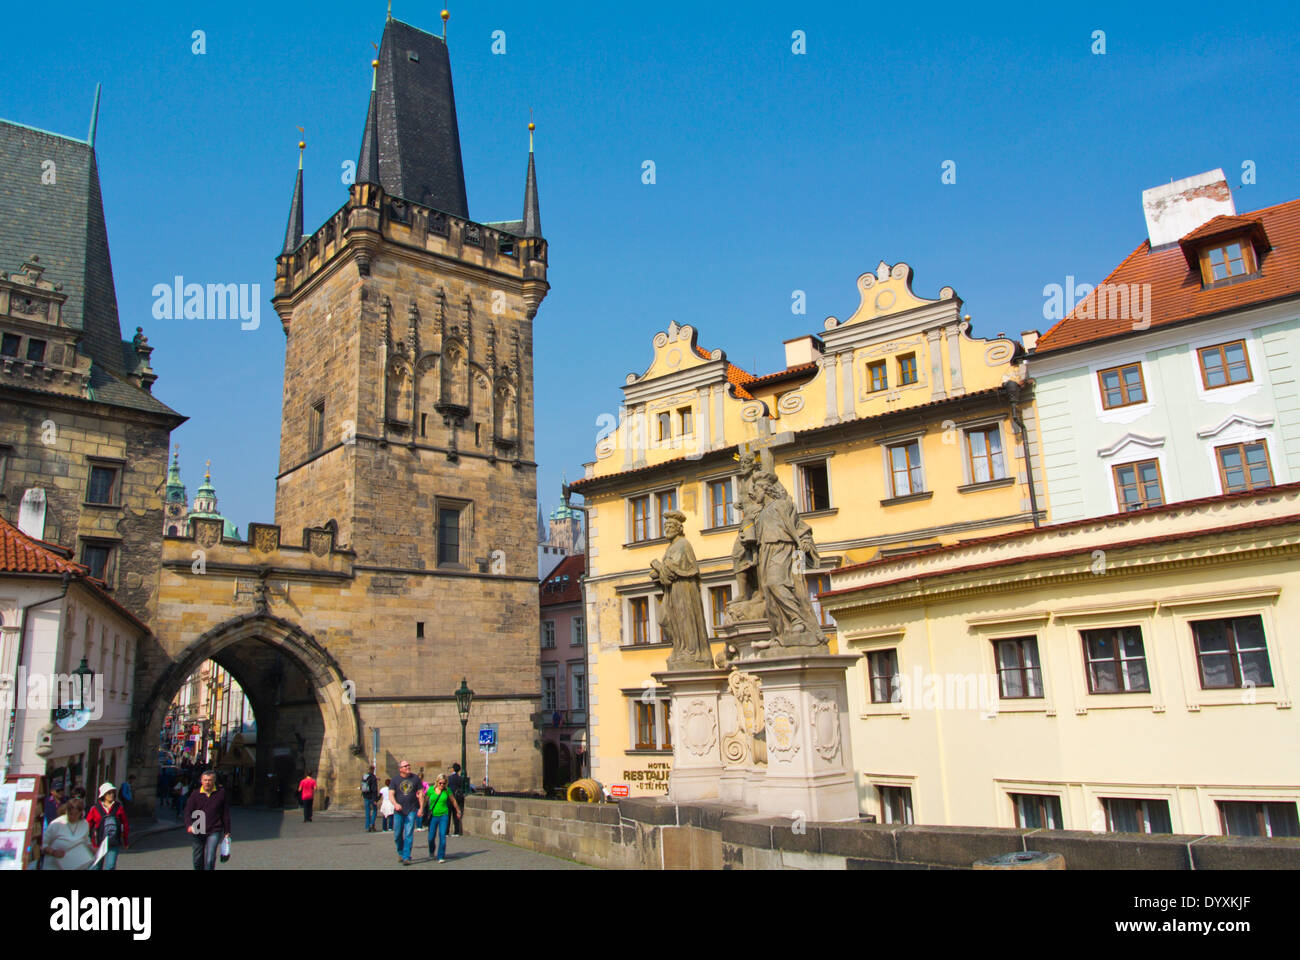 Fin de mala strana, Karluv Most avec la tour du pont, le Pont Charles, Mala Strana, Prague, République Tchèque, Europe Banque D'Images